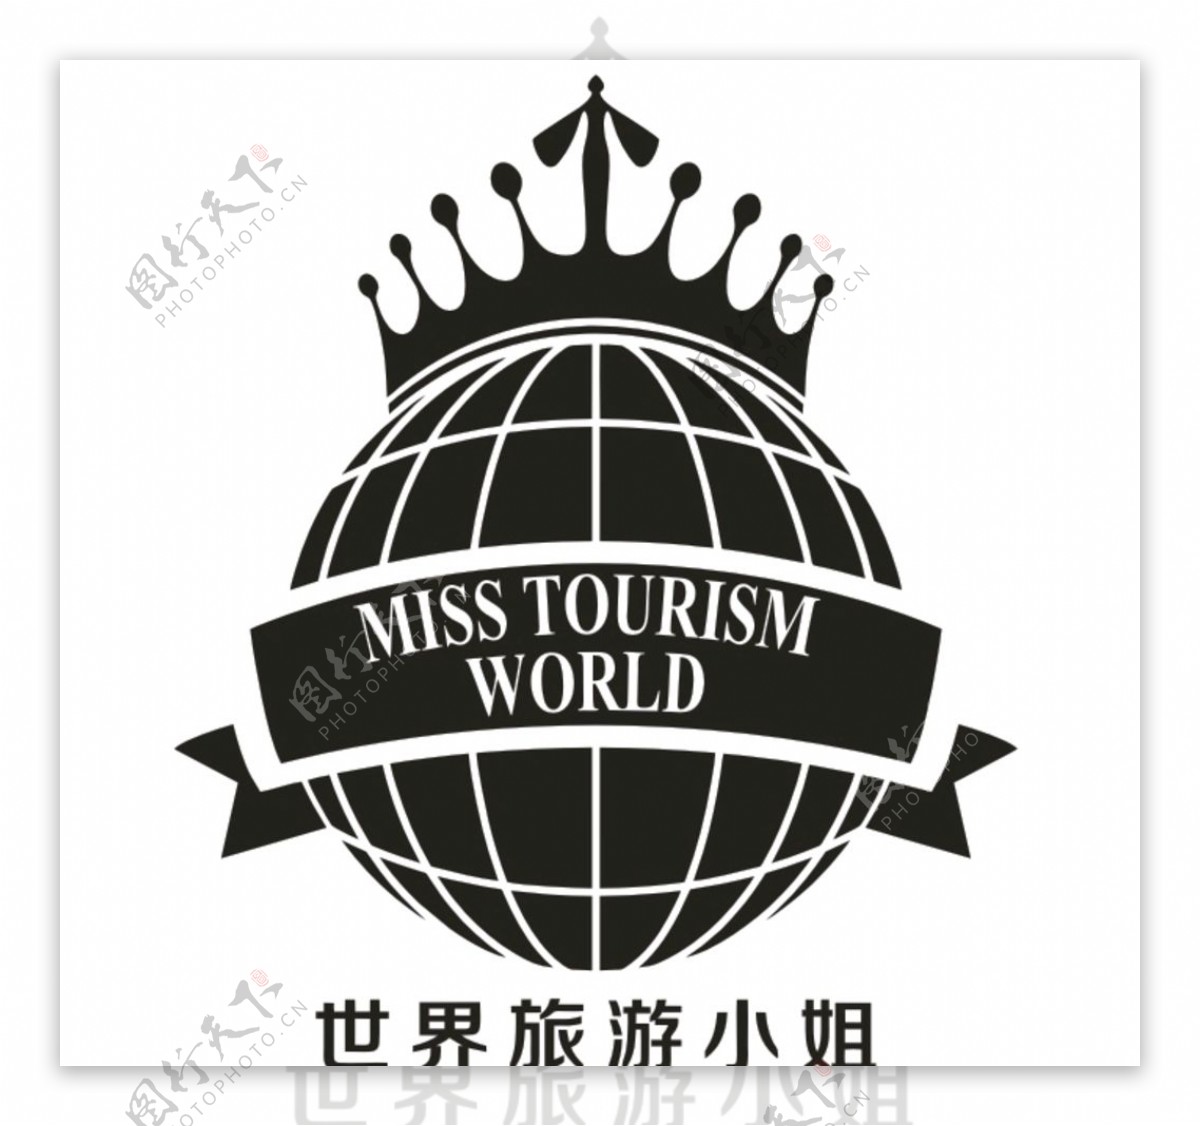 世界旅游小姐标志图片